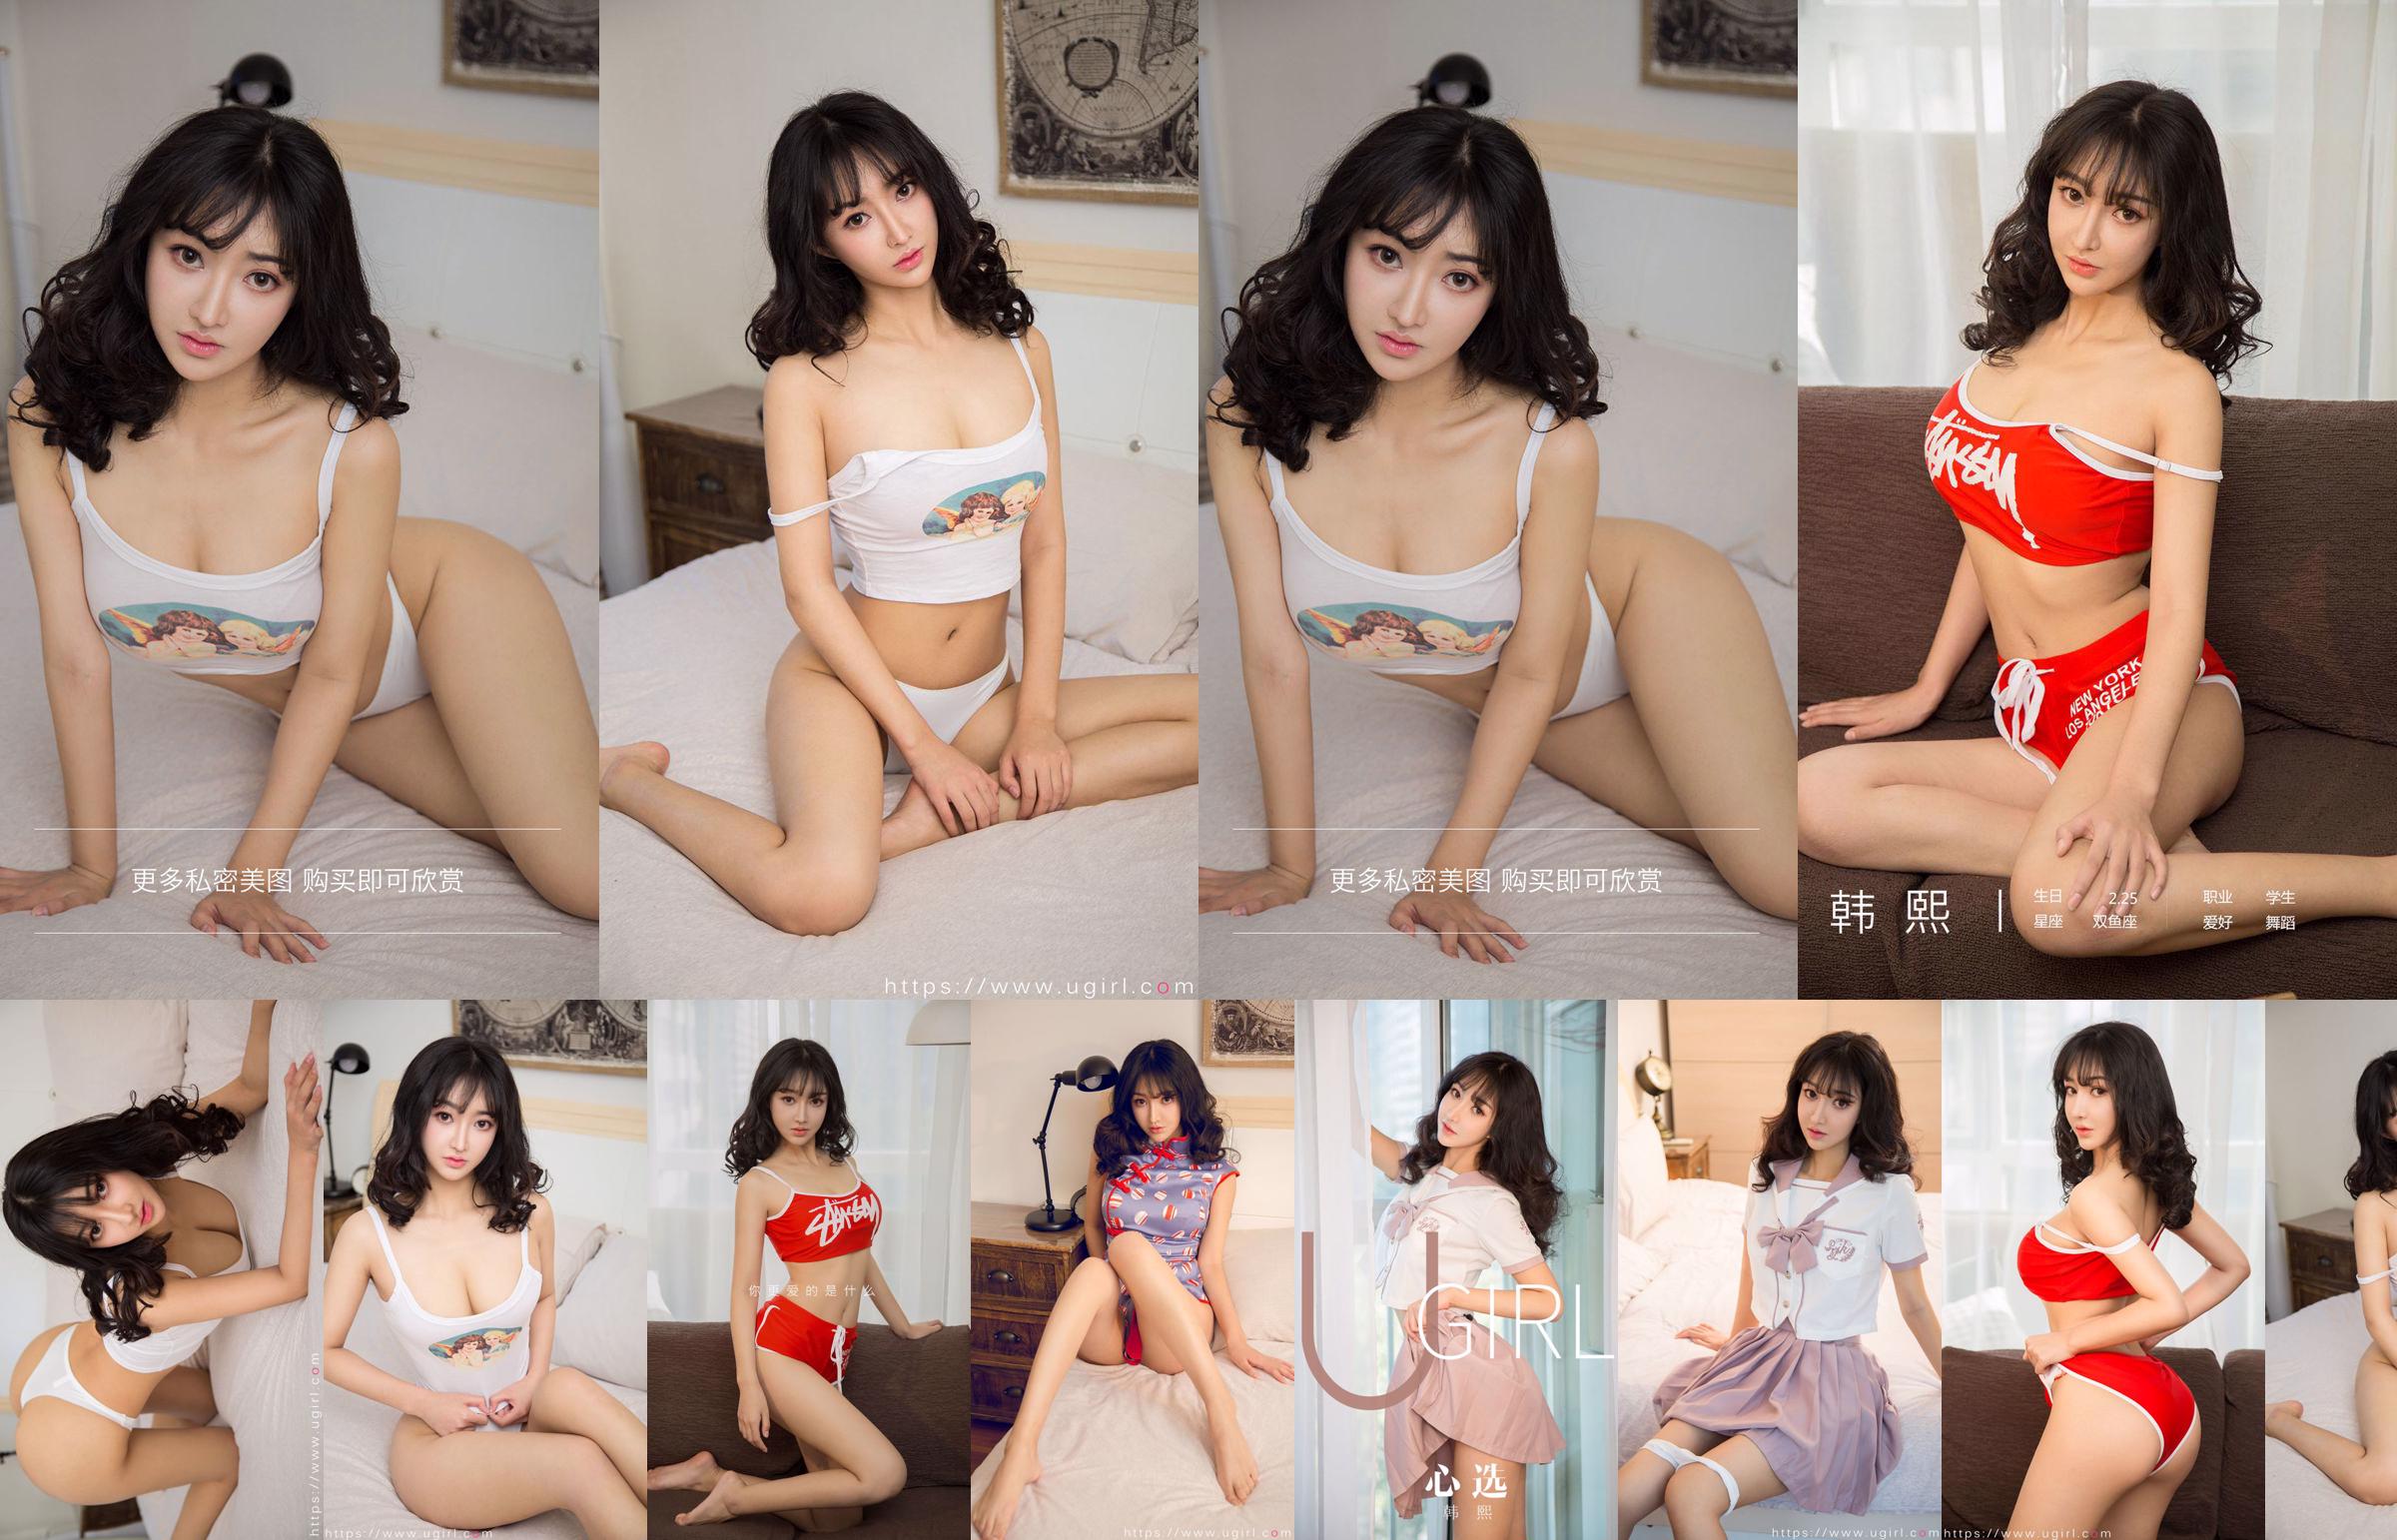 [Home Delivery WordGirls] No.812 Xi Shui Shui Beautiful Girl Trainee No.904eae Page 1